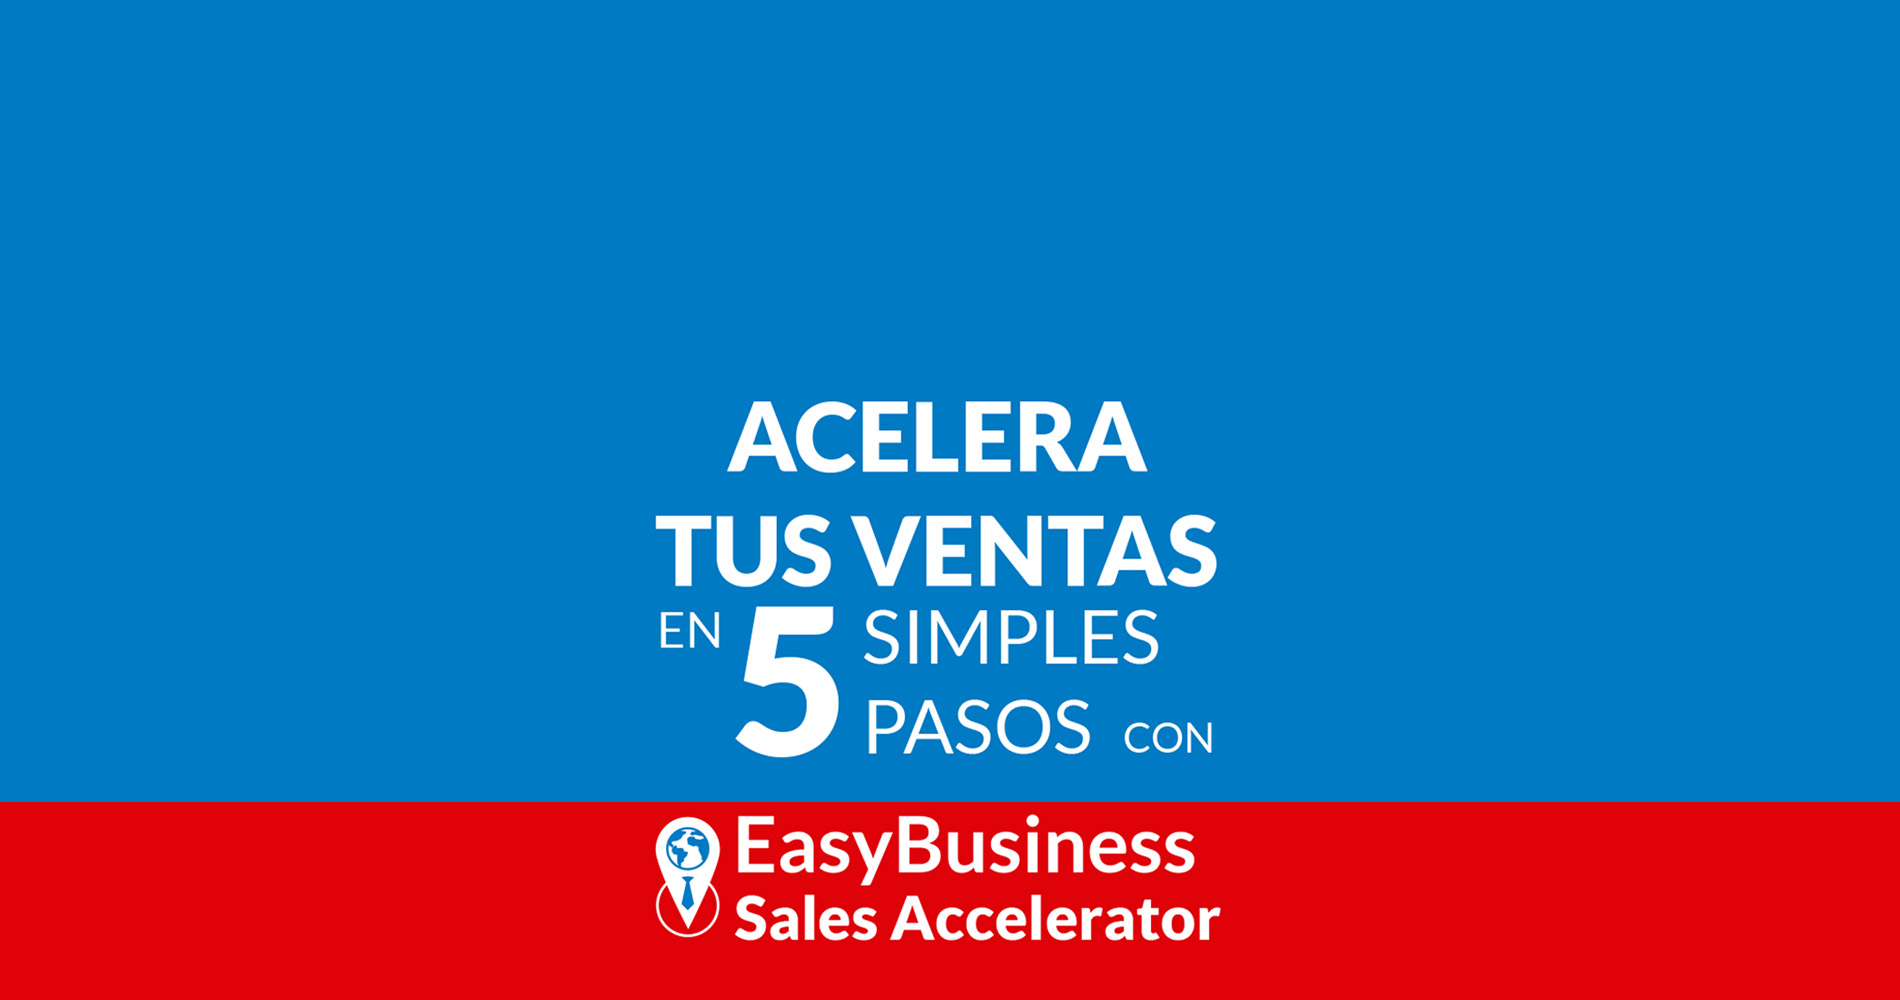 Acelera tus ventas en 5 simples pasos con EasyBusiness Sales Accelerator